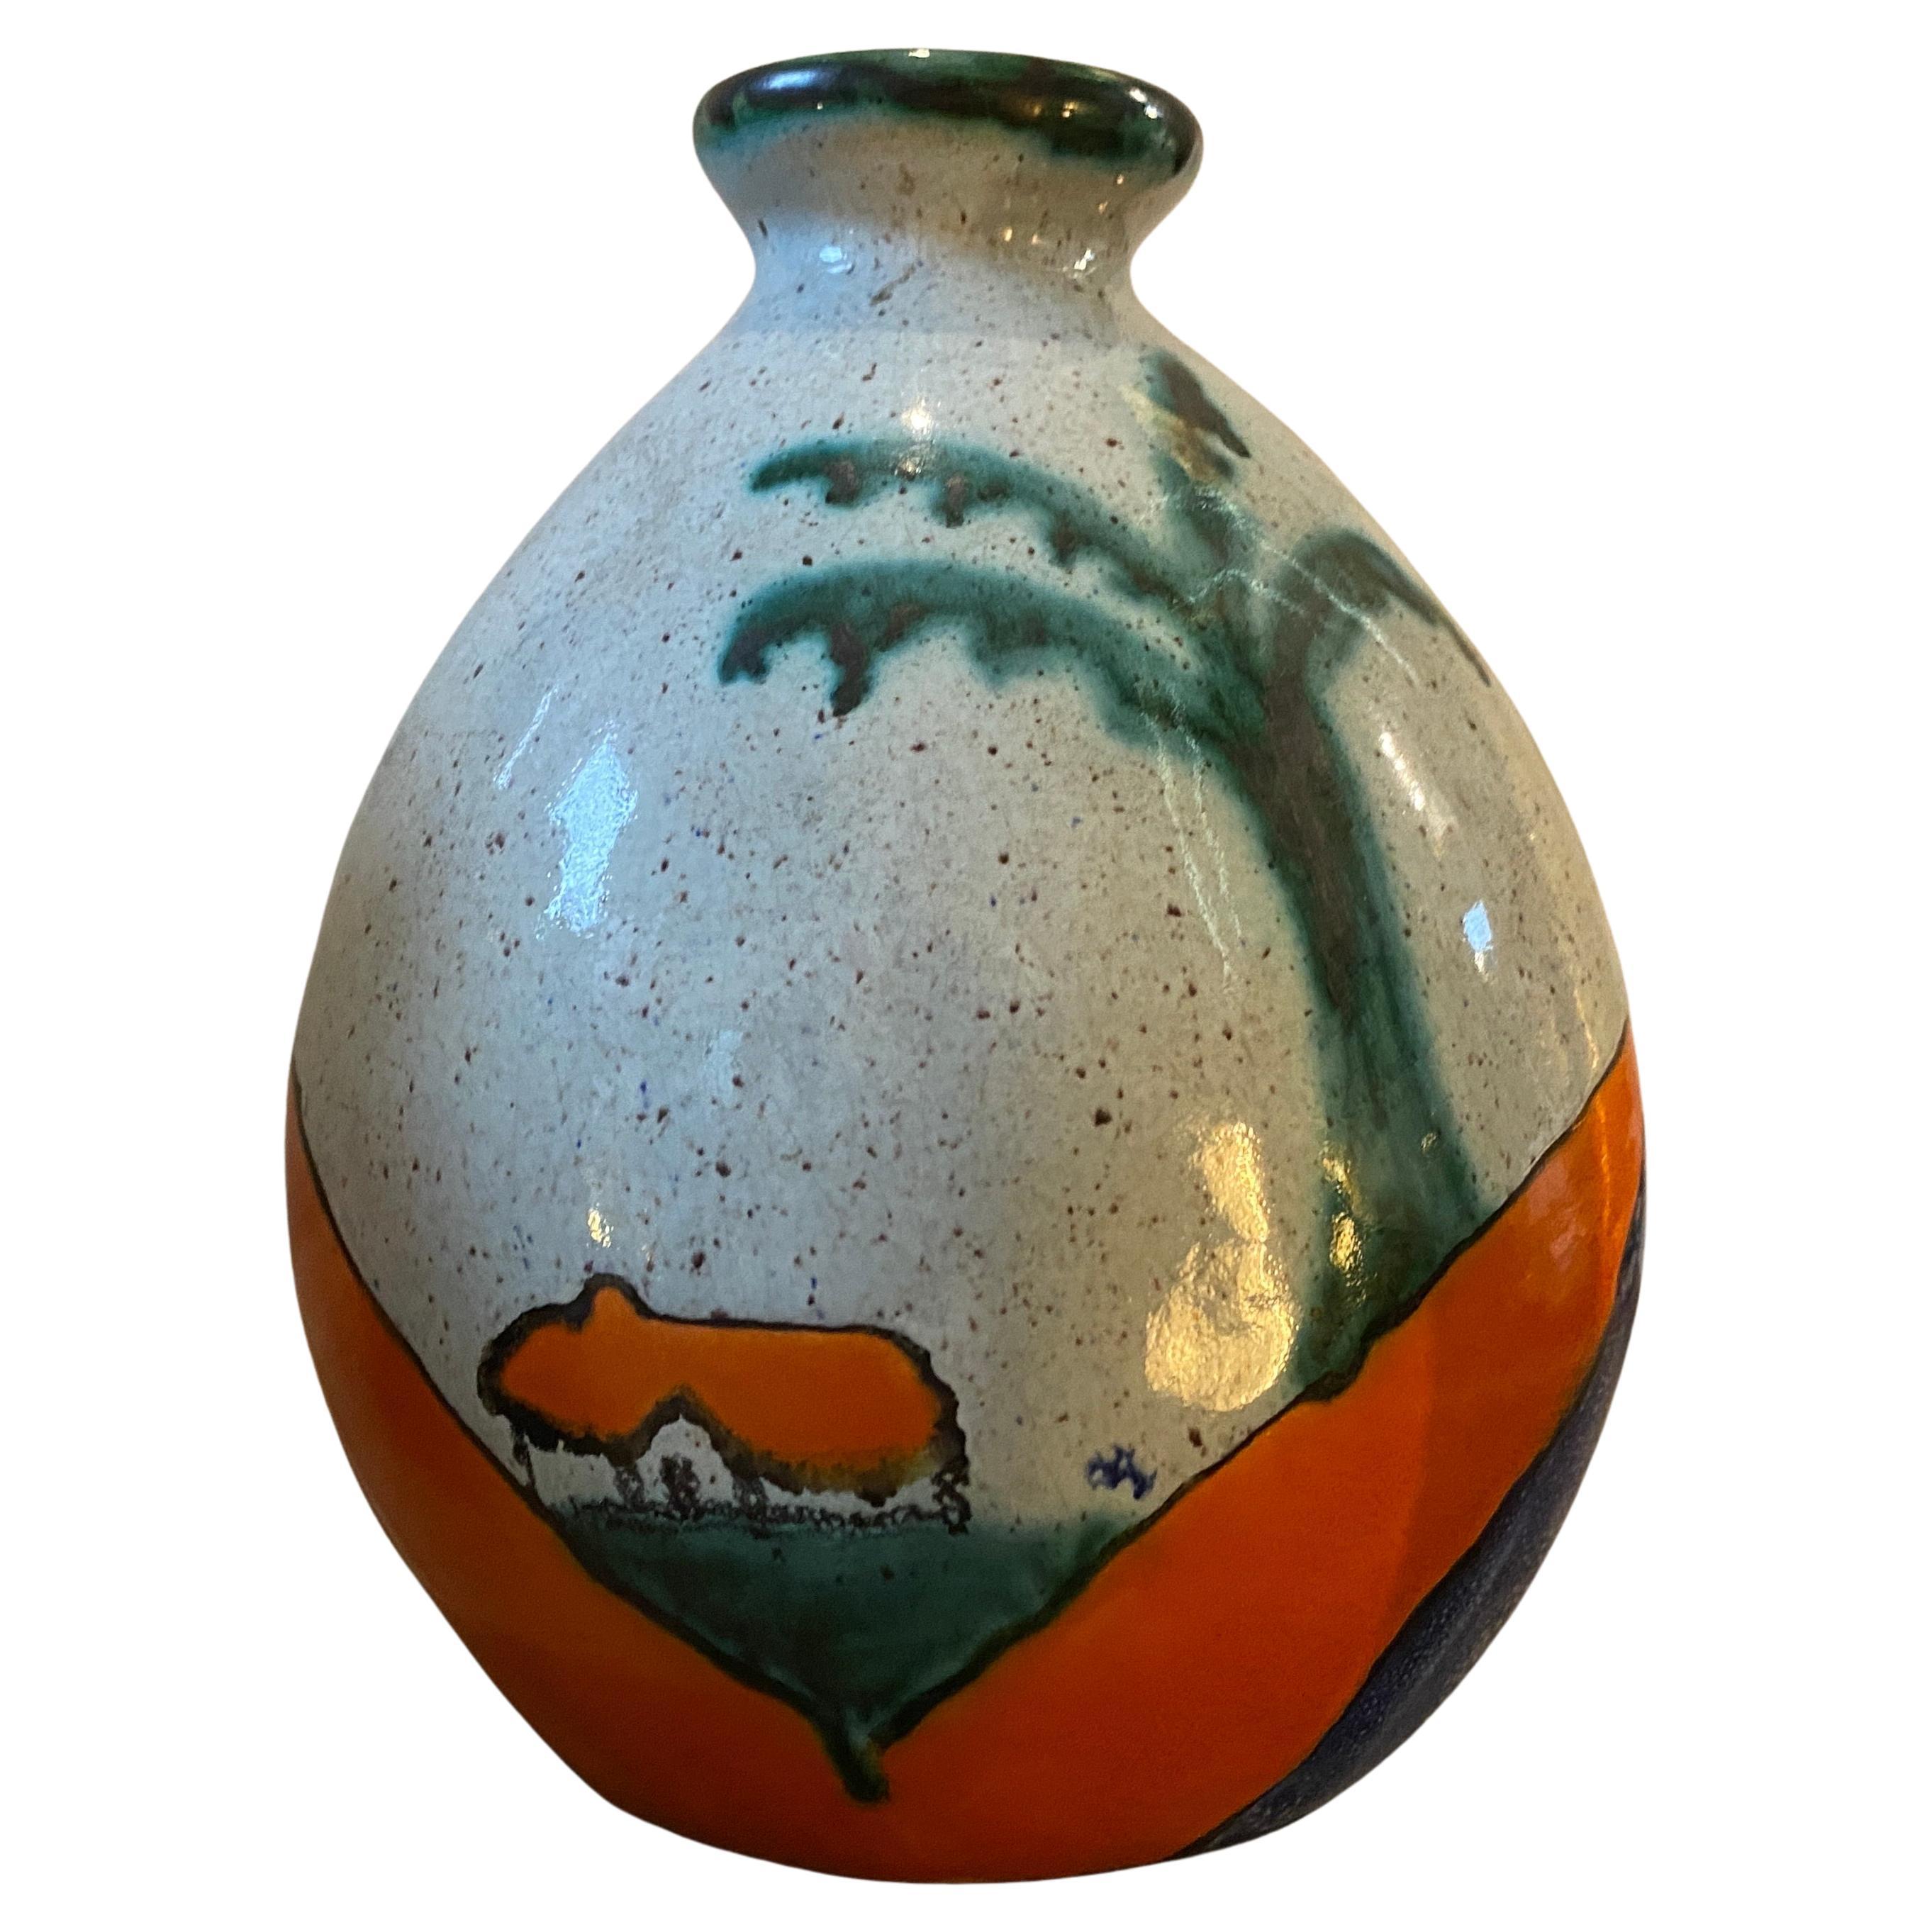 Das Paar handbemalter Keramikvasen von Ceramique de Bruxelles aus den 1970er Jahren ist ein beeindruckendes Beispiel für modernes Design aus der Mitte des Jahrhunderts. Ceramique de Bruxelles war ein belgisches Keramikunternehmen, das für seine